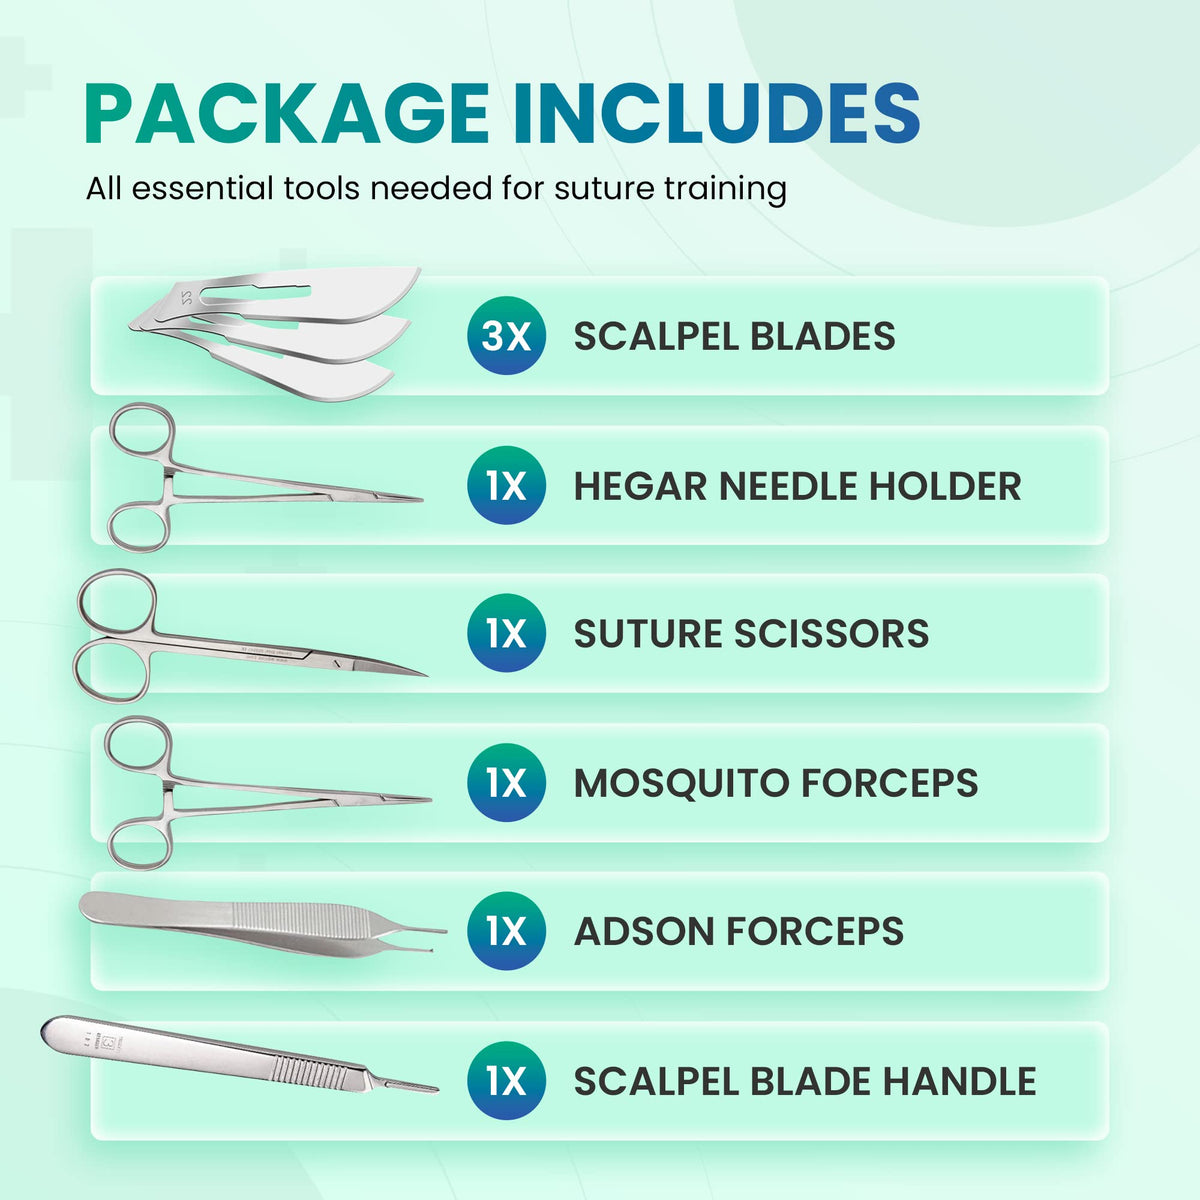 suture tool kit/étudiants en médecine suture kit/dissection outil kit par  davicon entreprises